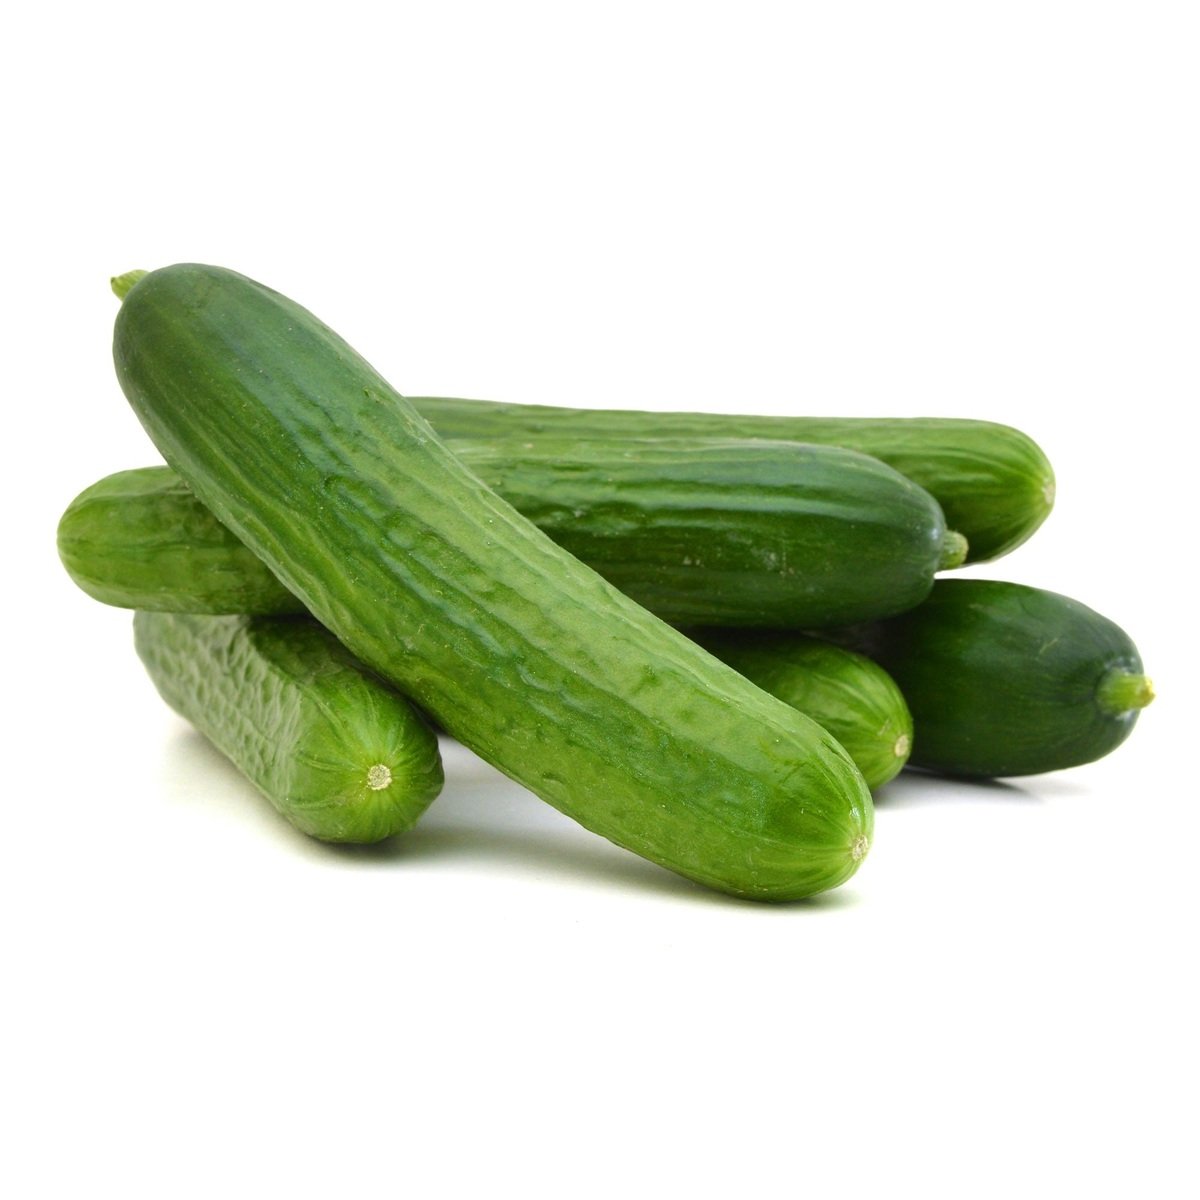 Buy Cucumber Kuwait 500g Online at Best Price | Cucumber | Lulu Kuwait in Kuwait